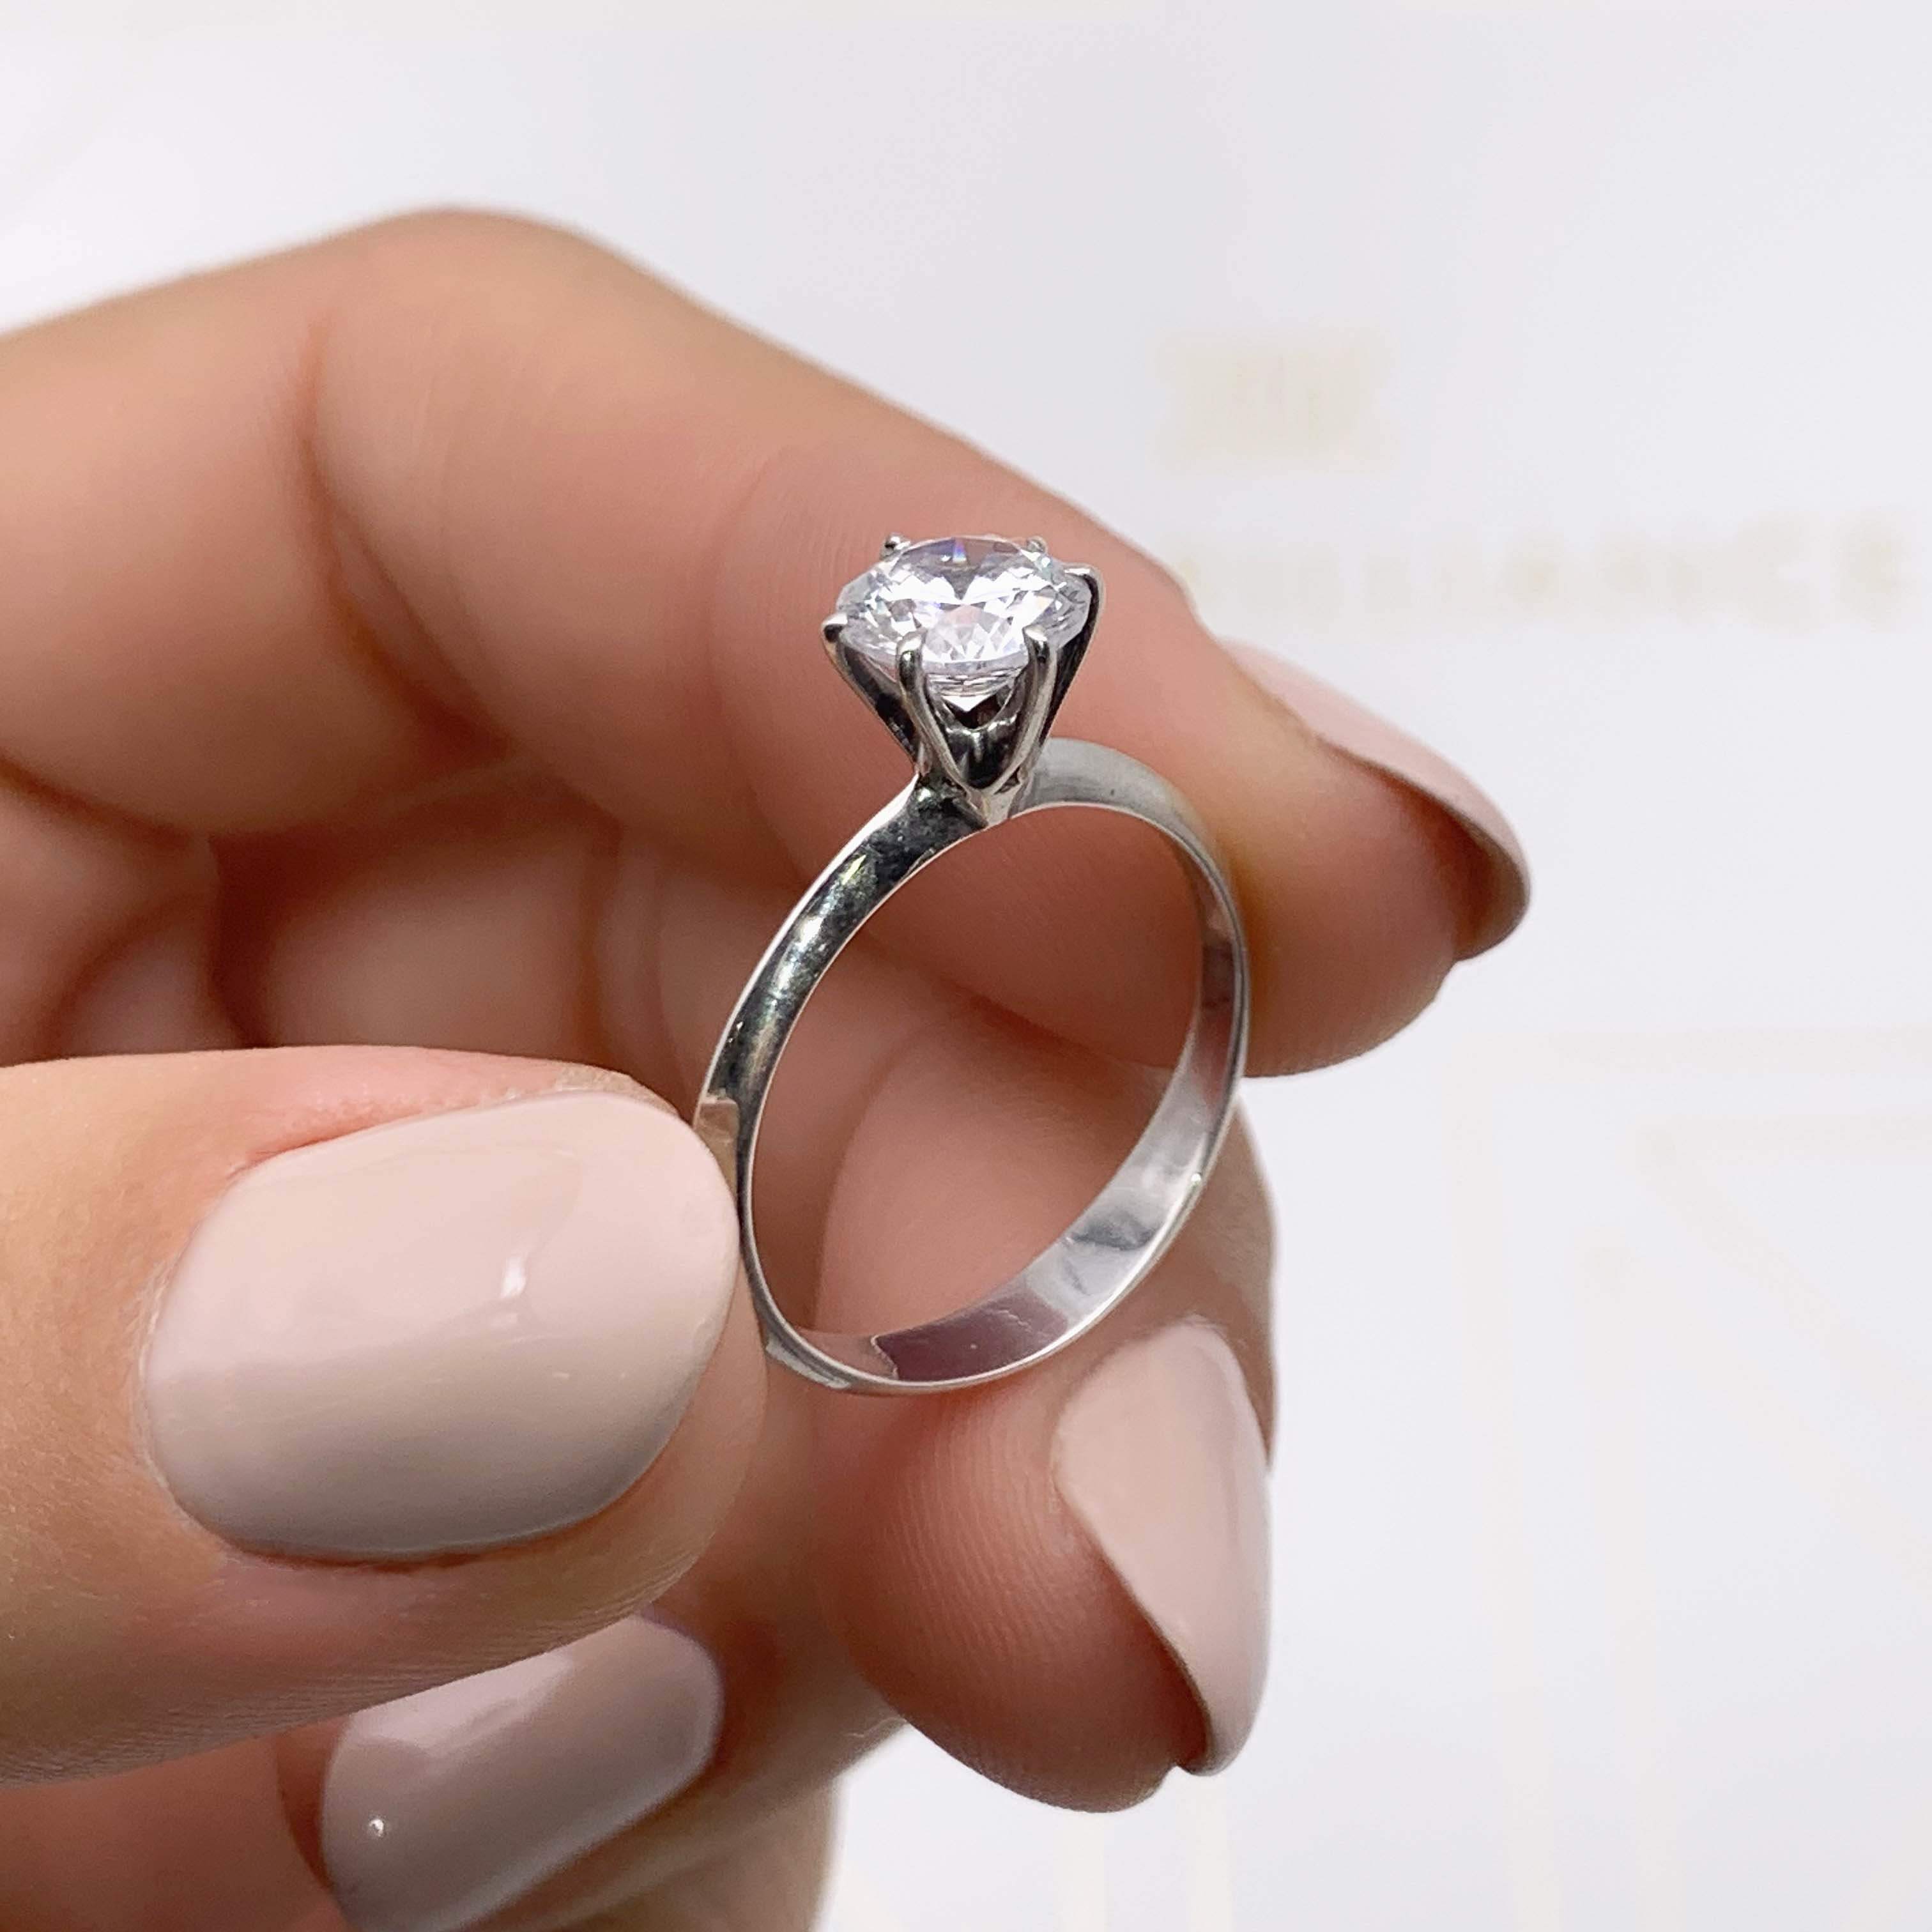 Samantha Diamond Engagement Ring   (1 Carat) -14K White Gold